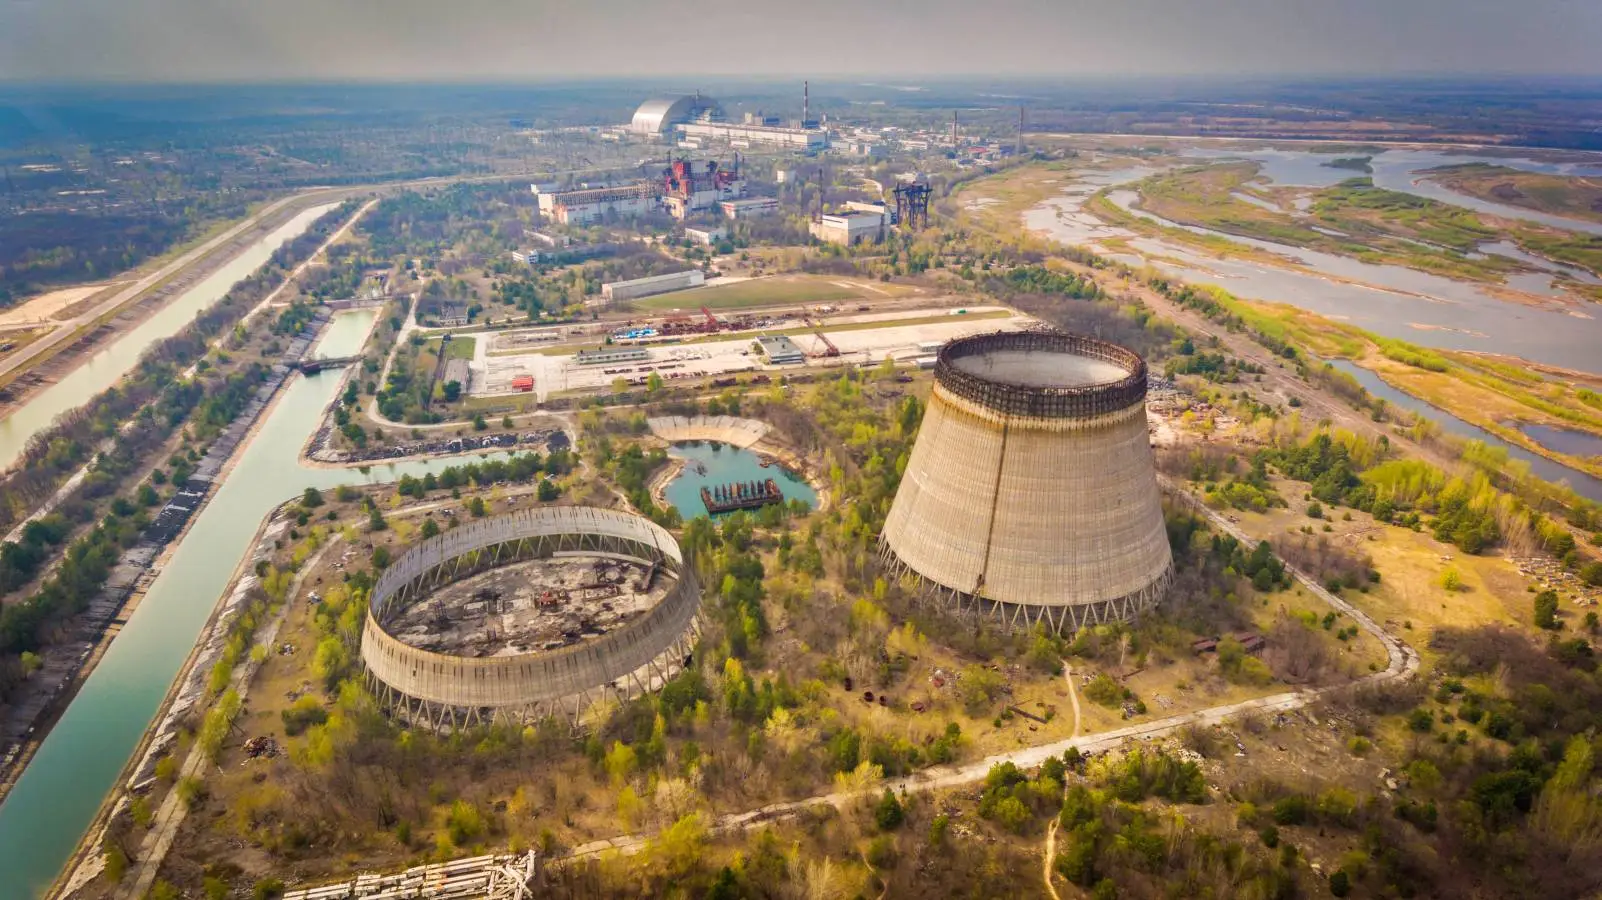 Oficjalnie ostrzeżono mieszkańców okolicy o niebezpieczeństwie elektrowni jądrowej w Zaporożu